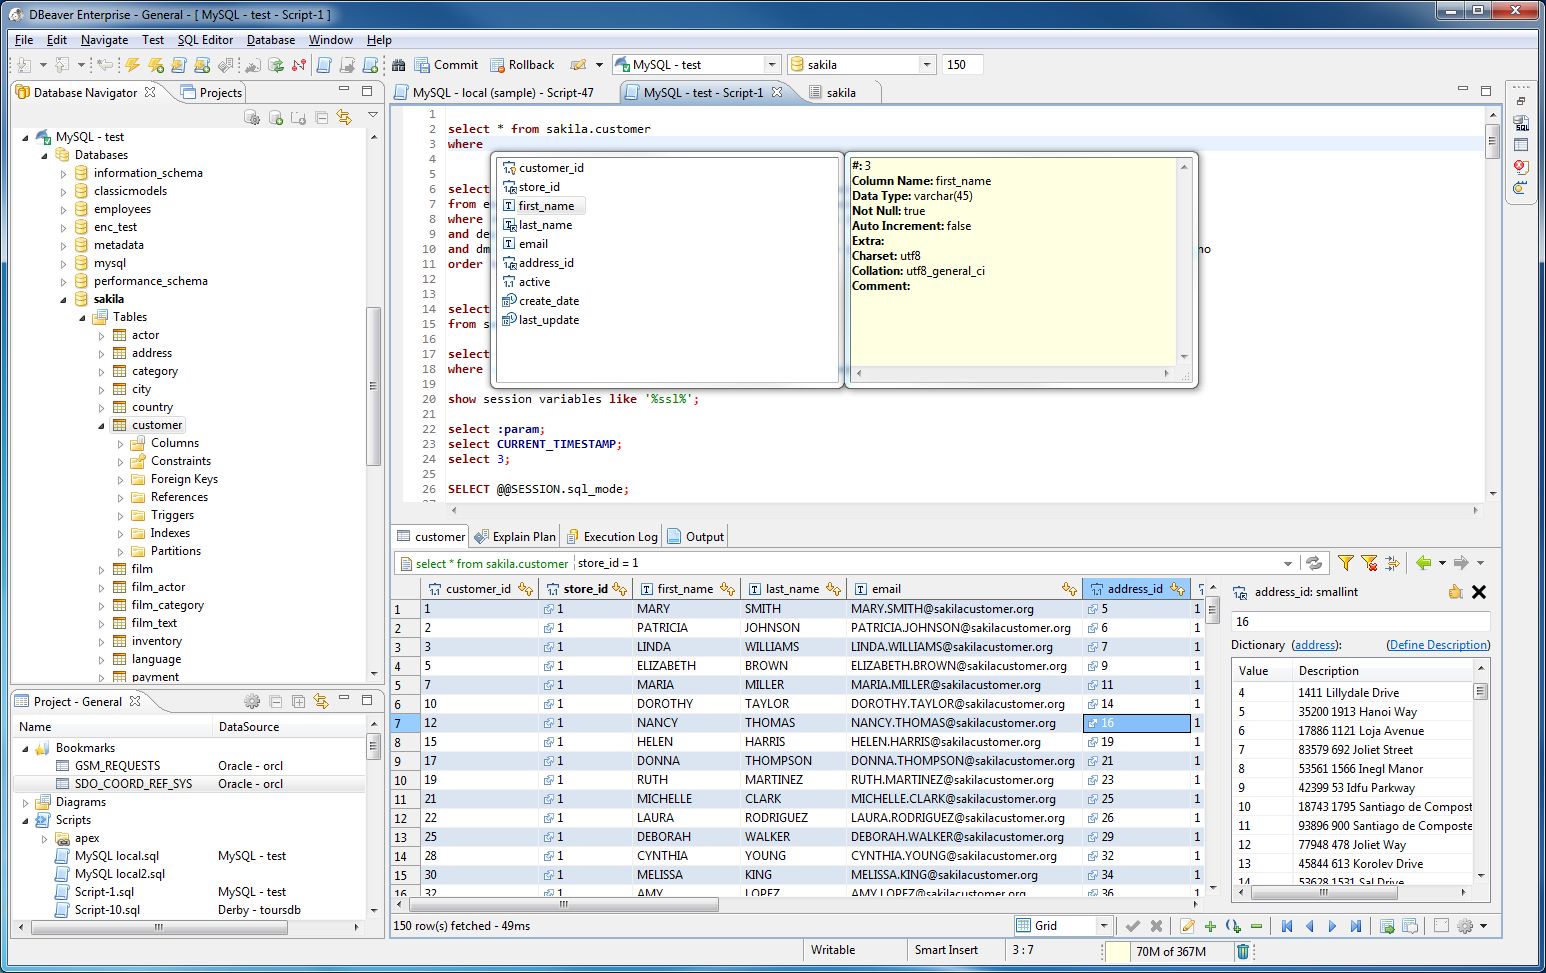 Beekeeper Studio 3.9.20  Database Management Software